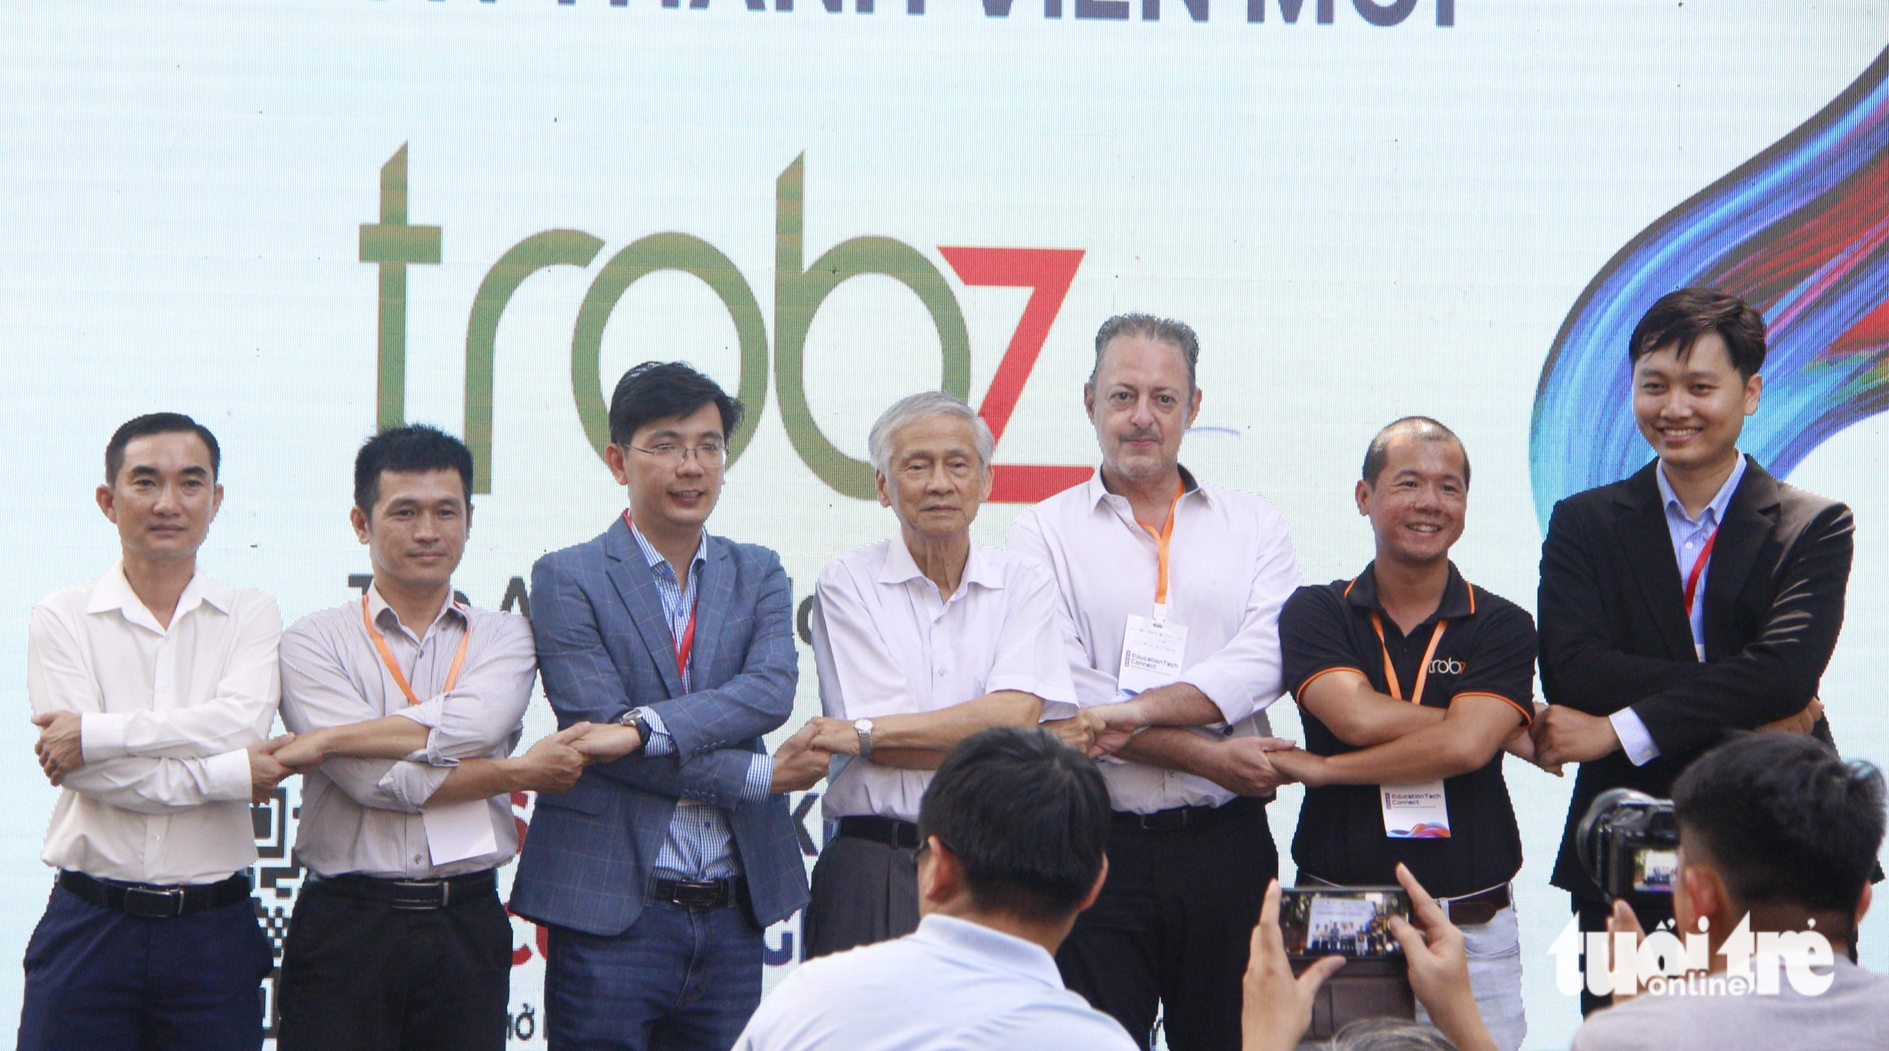 Thạc sĩ Quách Anh Sen, phó giám đốc Vườn ươm doanh nghiệp công nghệ cao (bìa trái) - trong sự kiện ra mắt Liên minh giáo dục sáng tạo Việt Nam - Ảnh: CÔNG TRIỆU